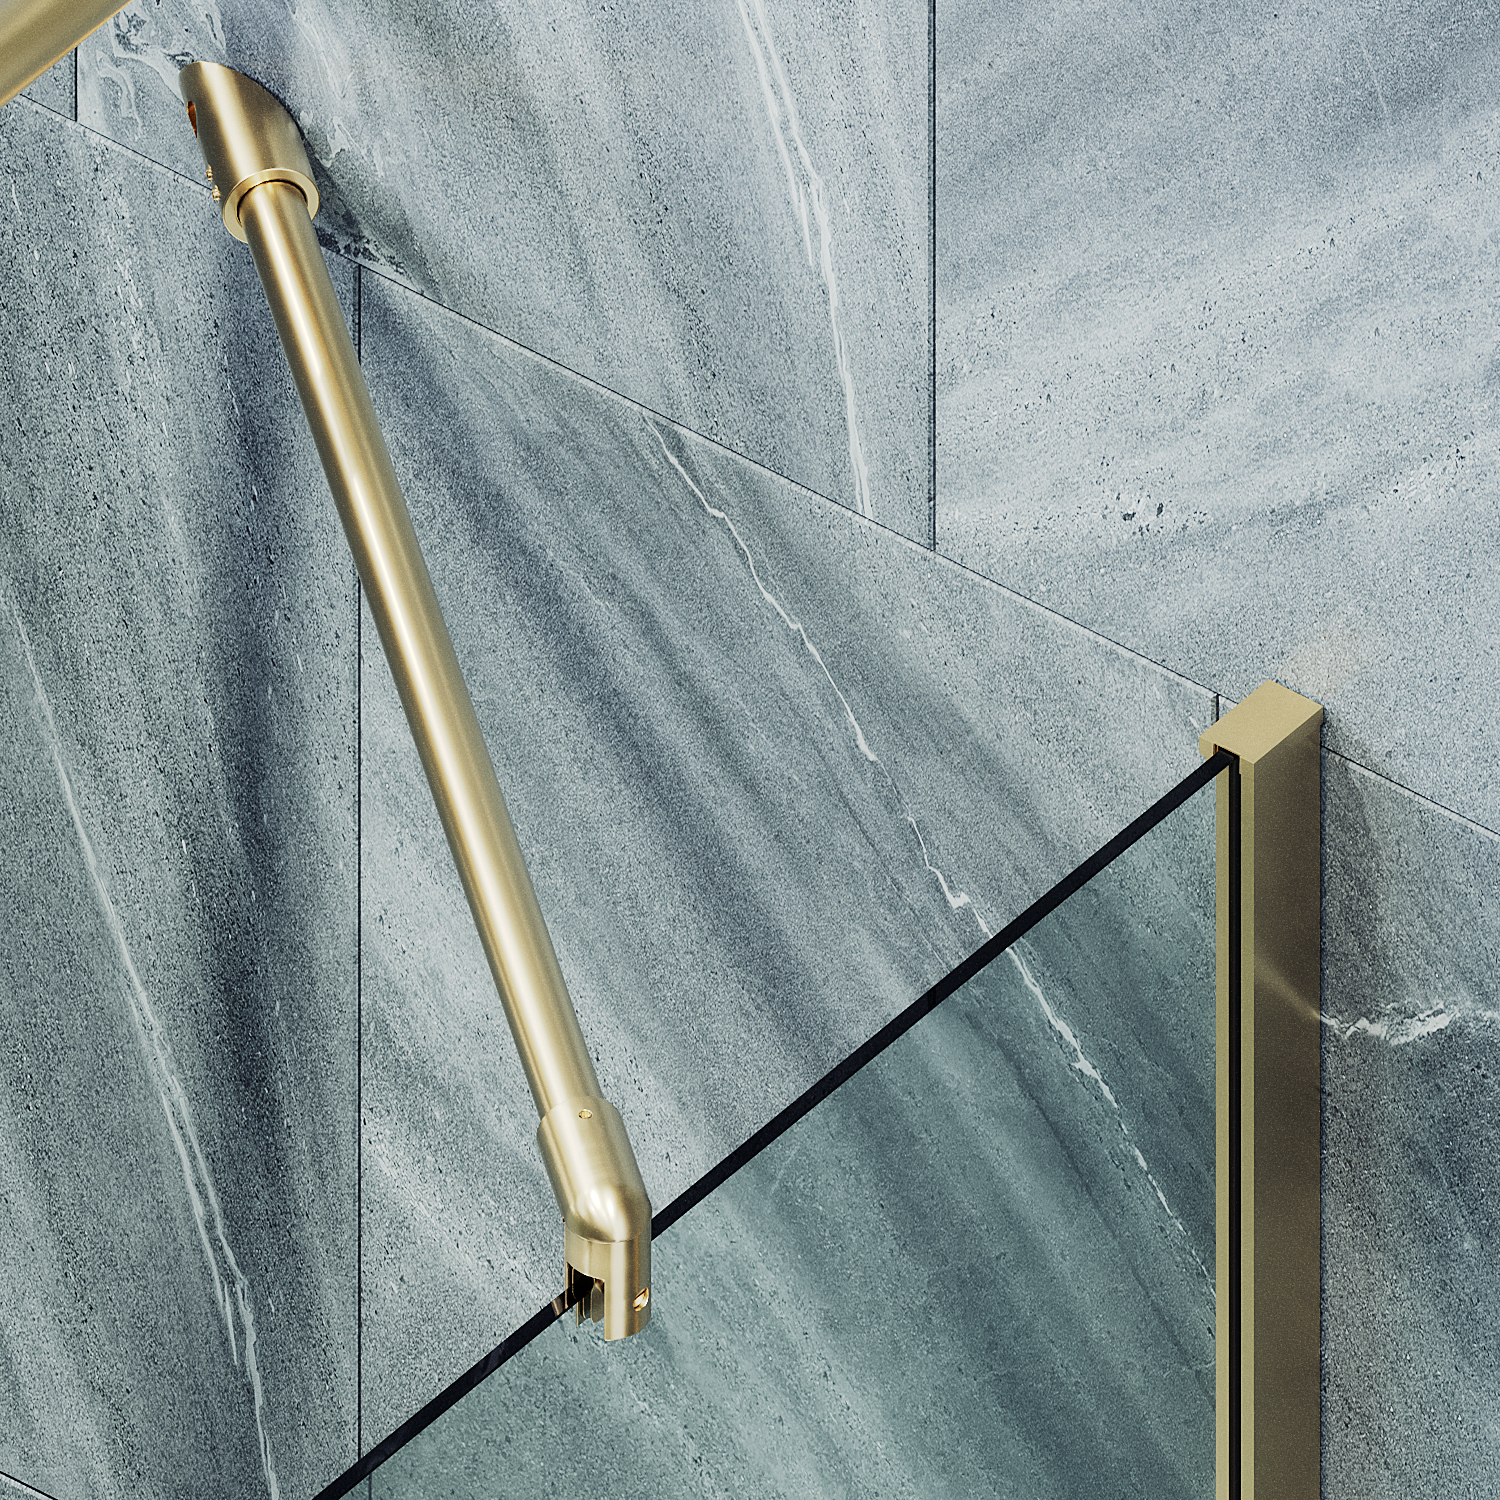 Шторка для ванны MaybahGlass 40х140 MGV-62-3ш стекло прозрачное, профиль золото - фото 5